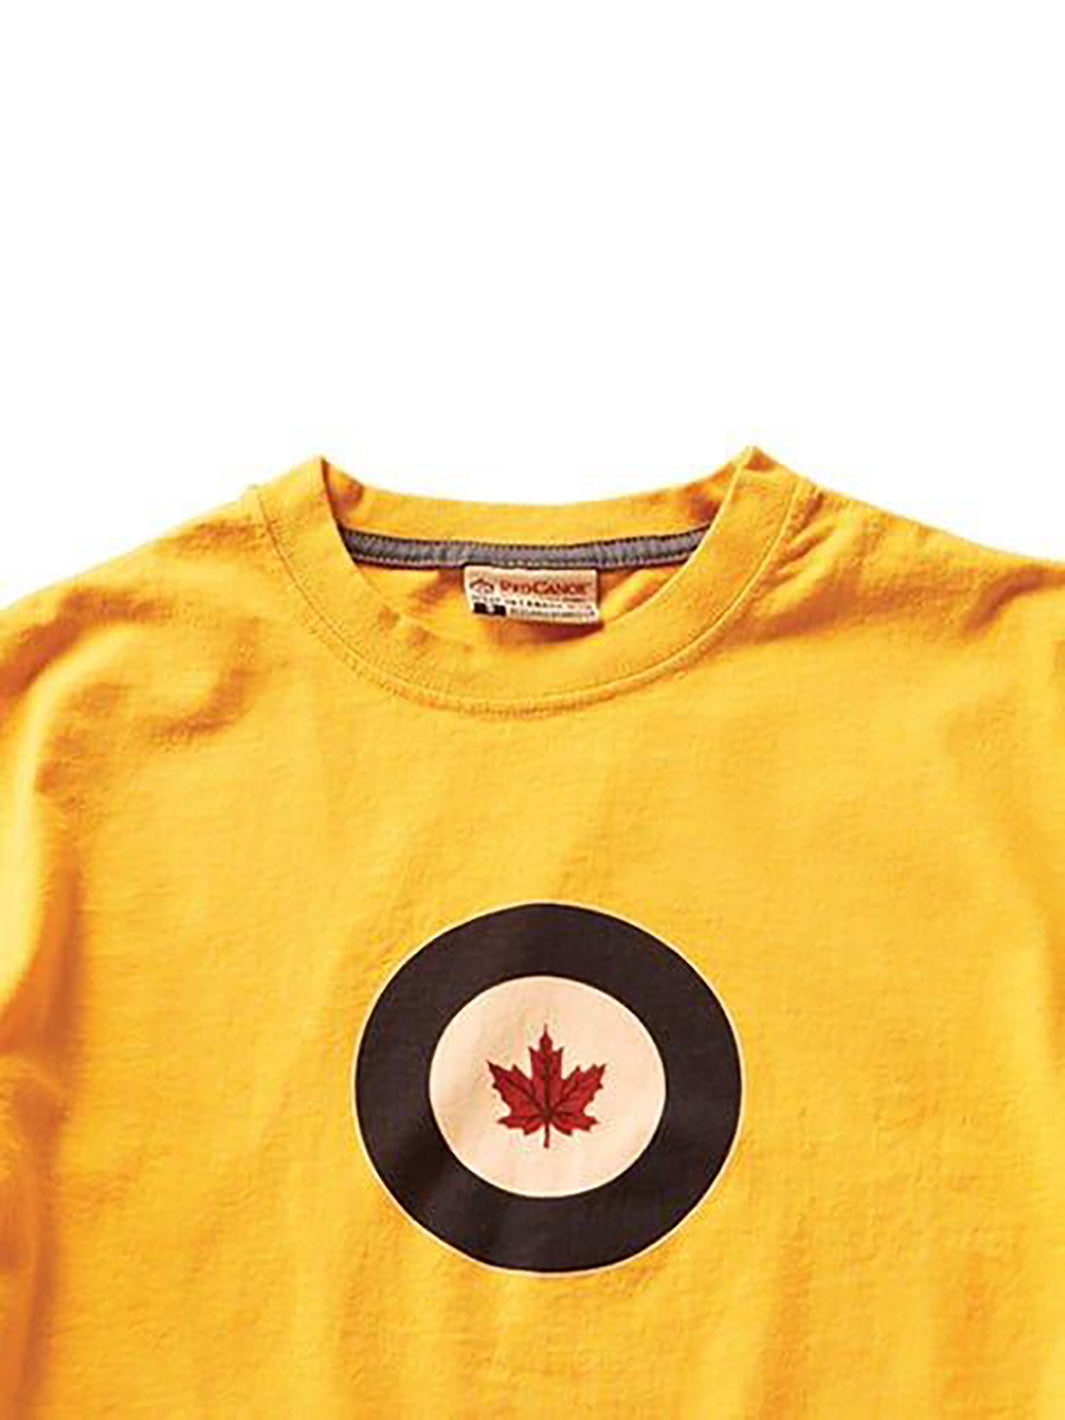 Détails du logo du Tshirt RCAF jaune pour hommes